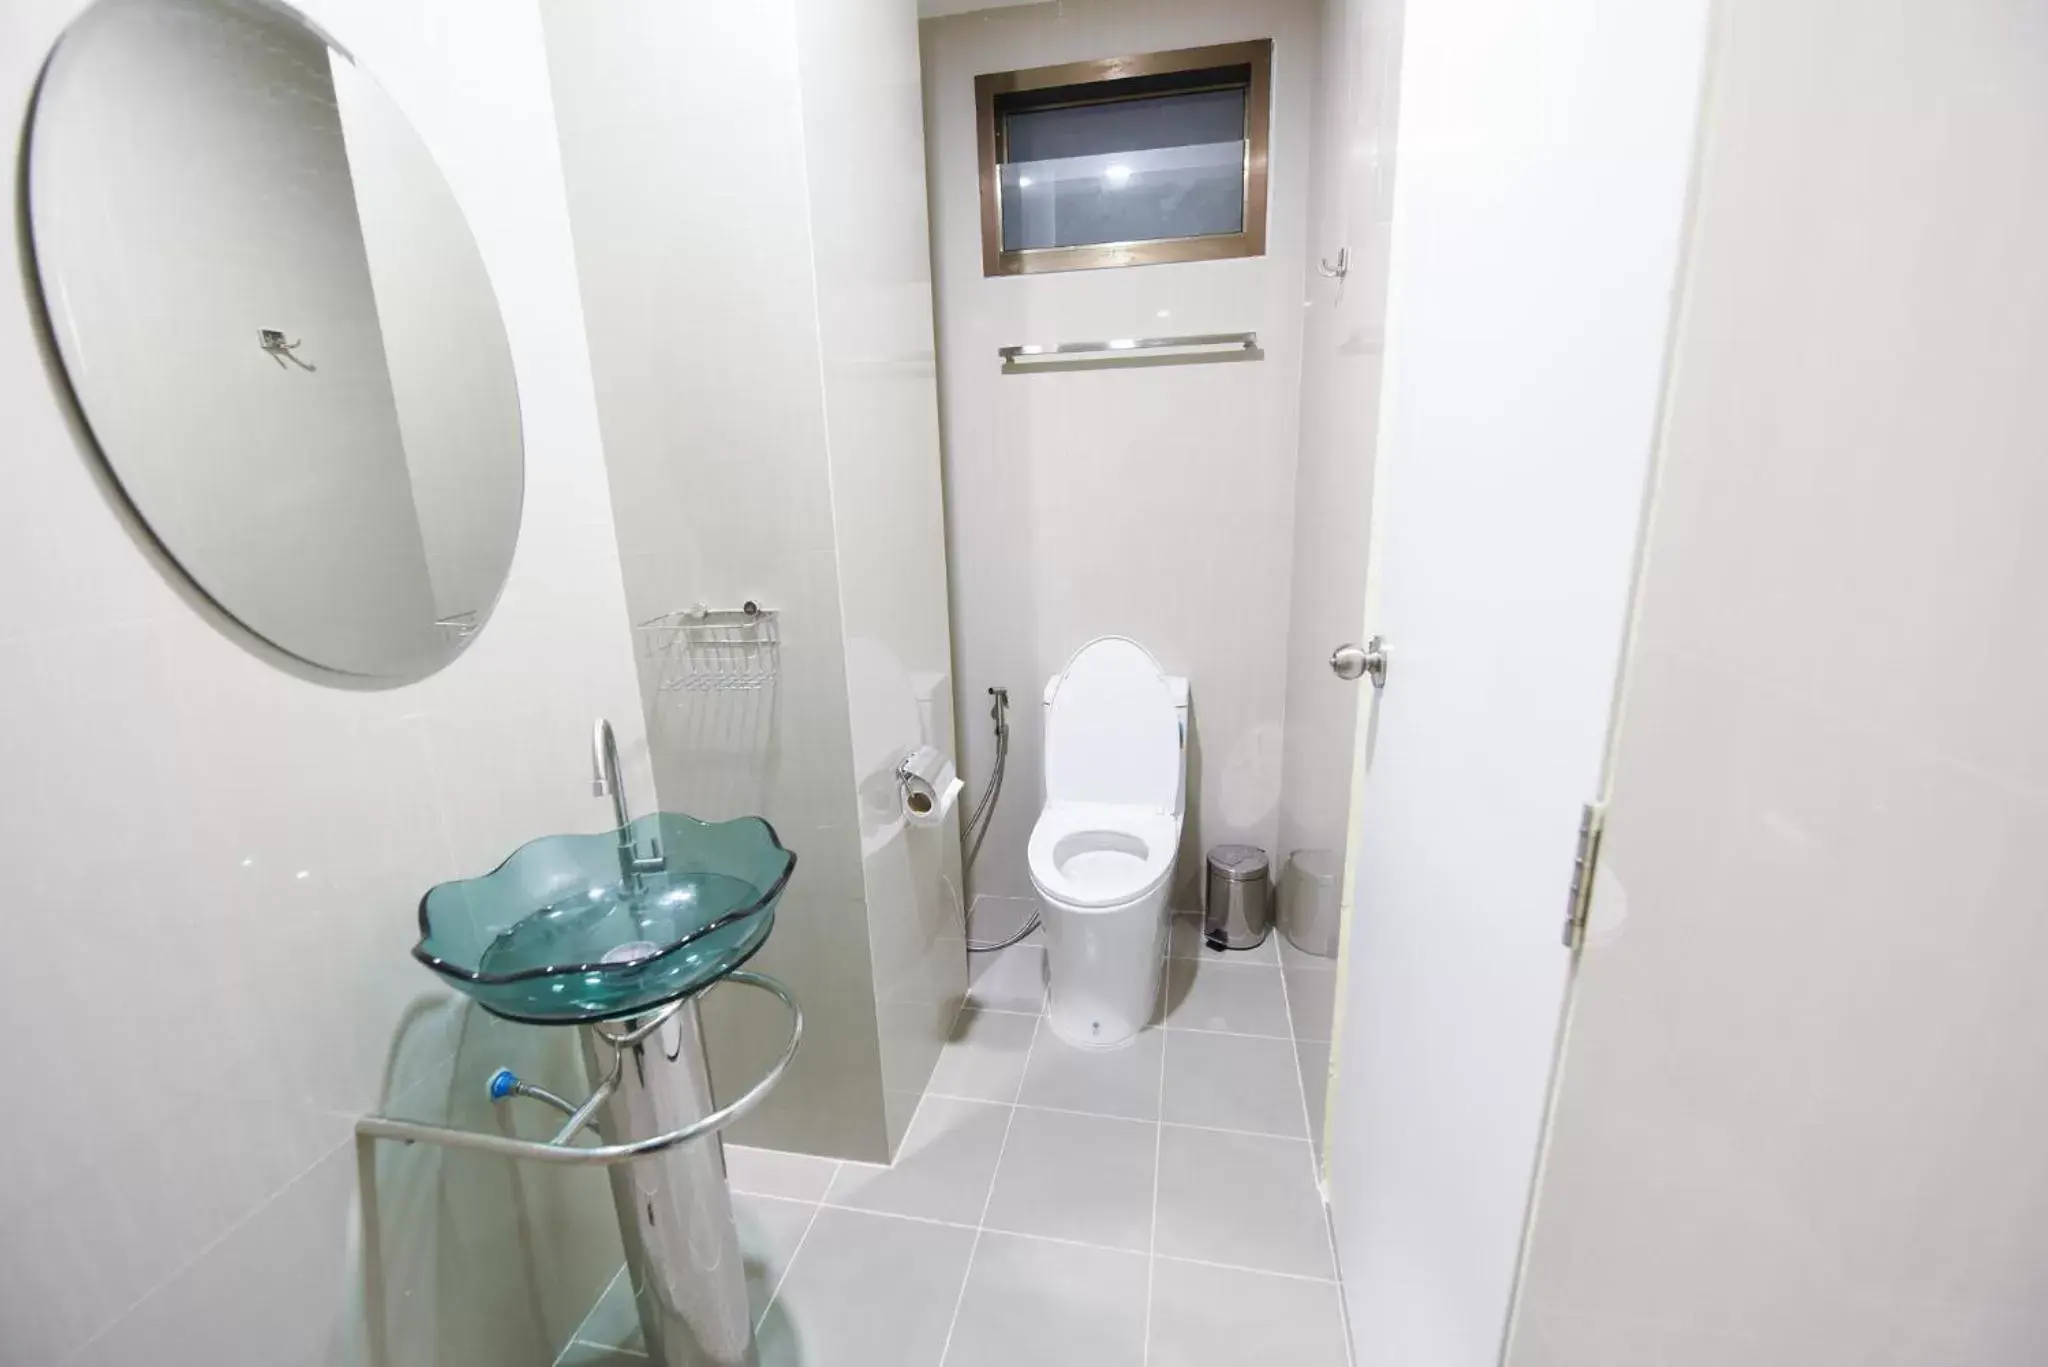 Toilet, Bathroom in Wish Hotel Ubon